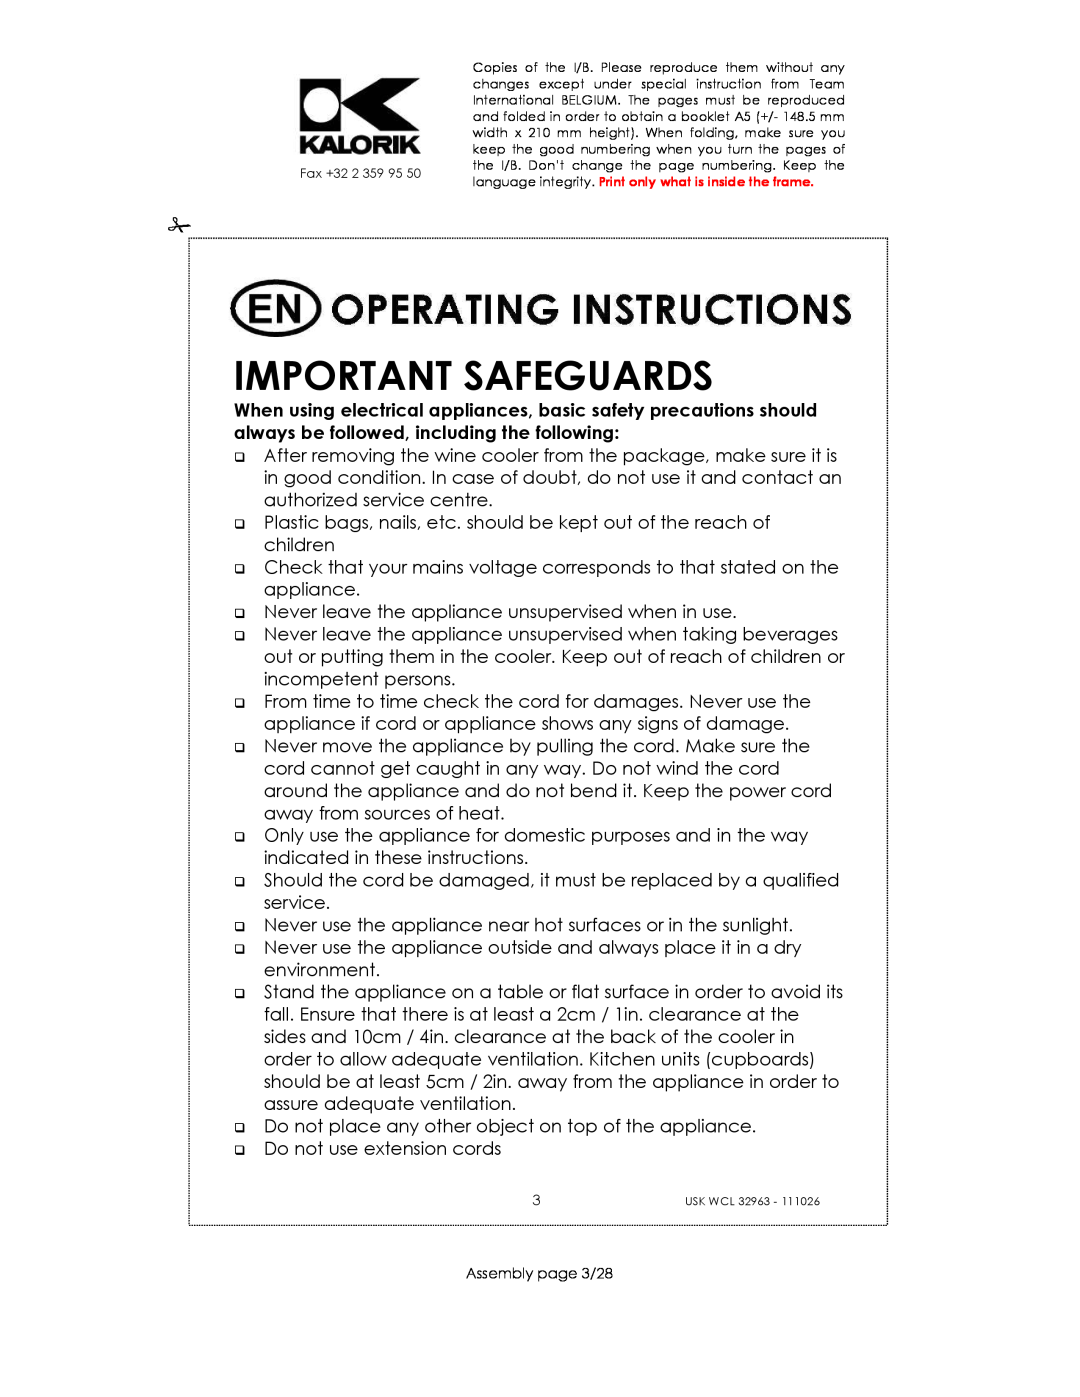 Kalorik USK WCL 32963 manual Important Safeguards 